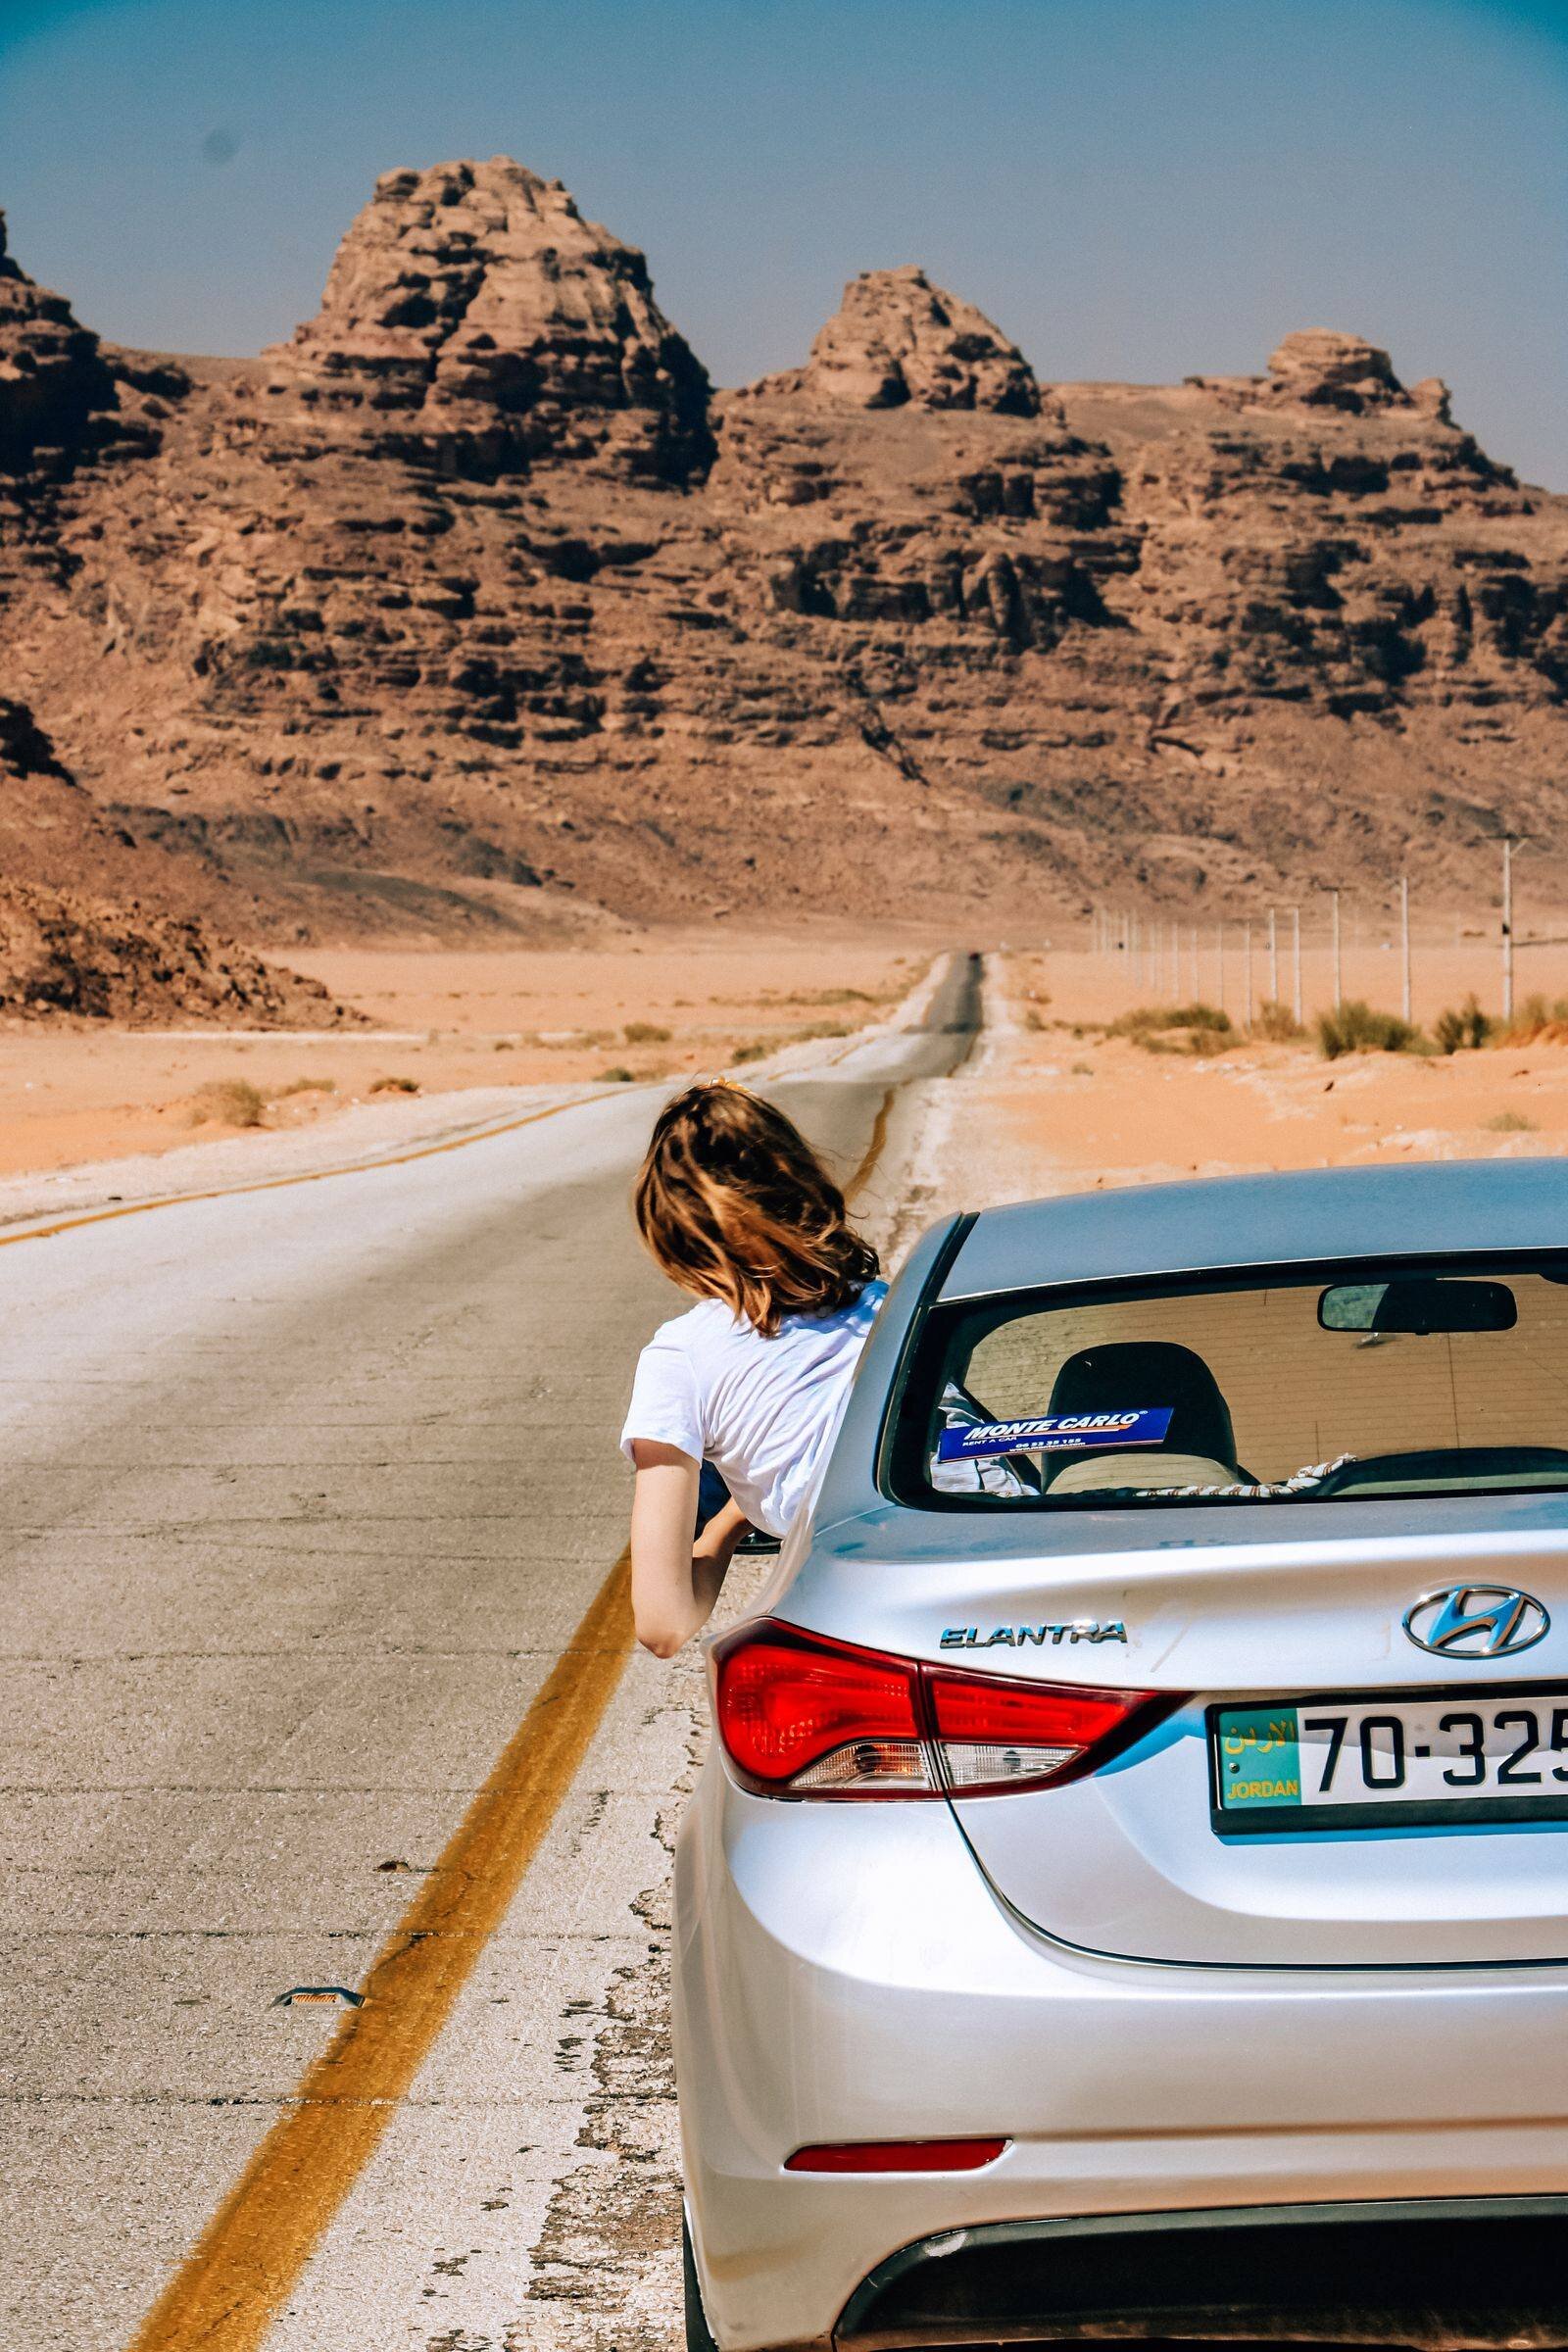 The view driving to Wadi Rum, Jordan